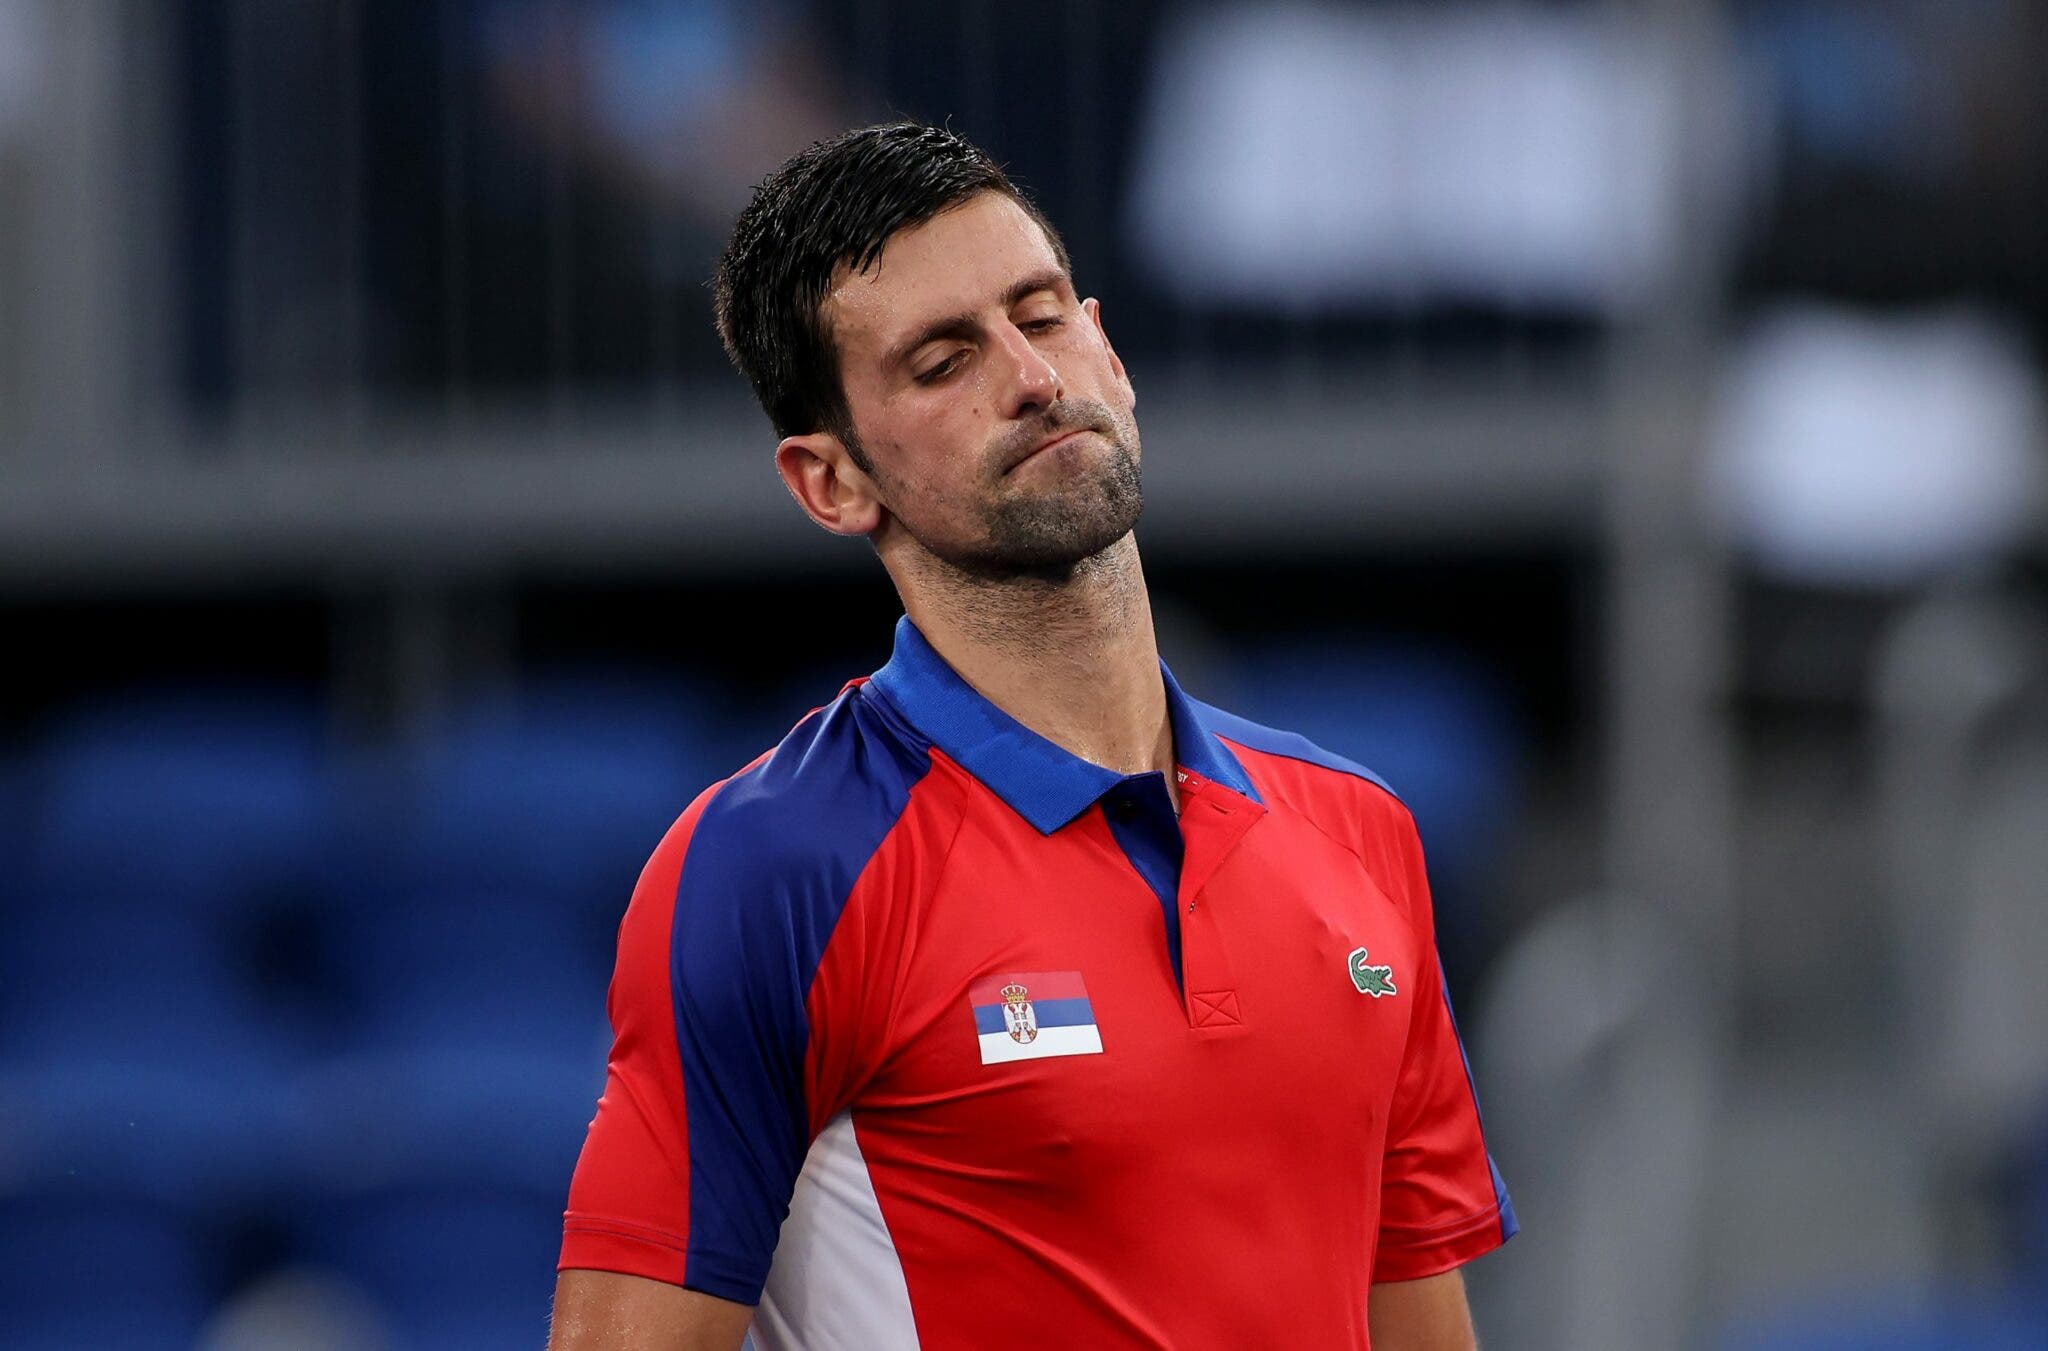 L'espulsione di Novak Djokovic dall'Australia è stata rimandata a lunedì